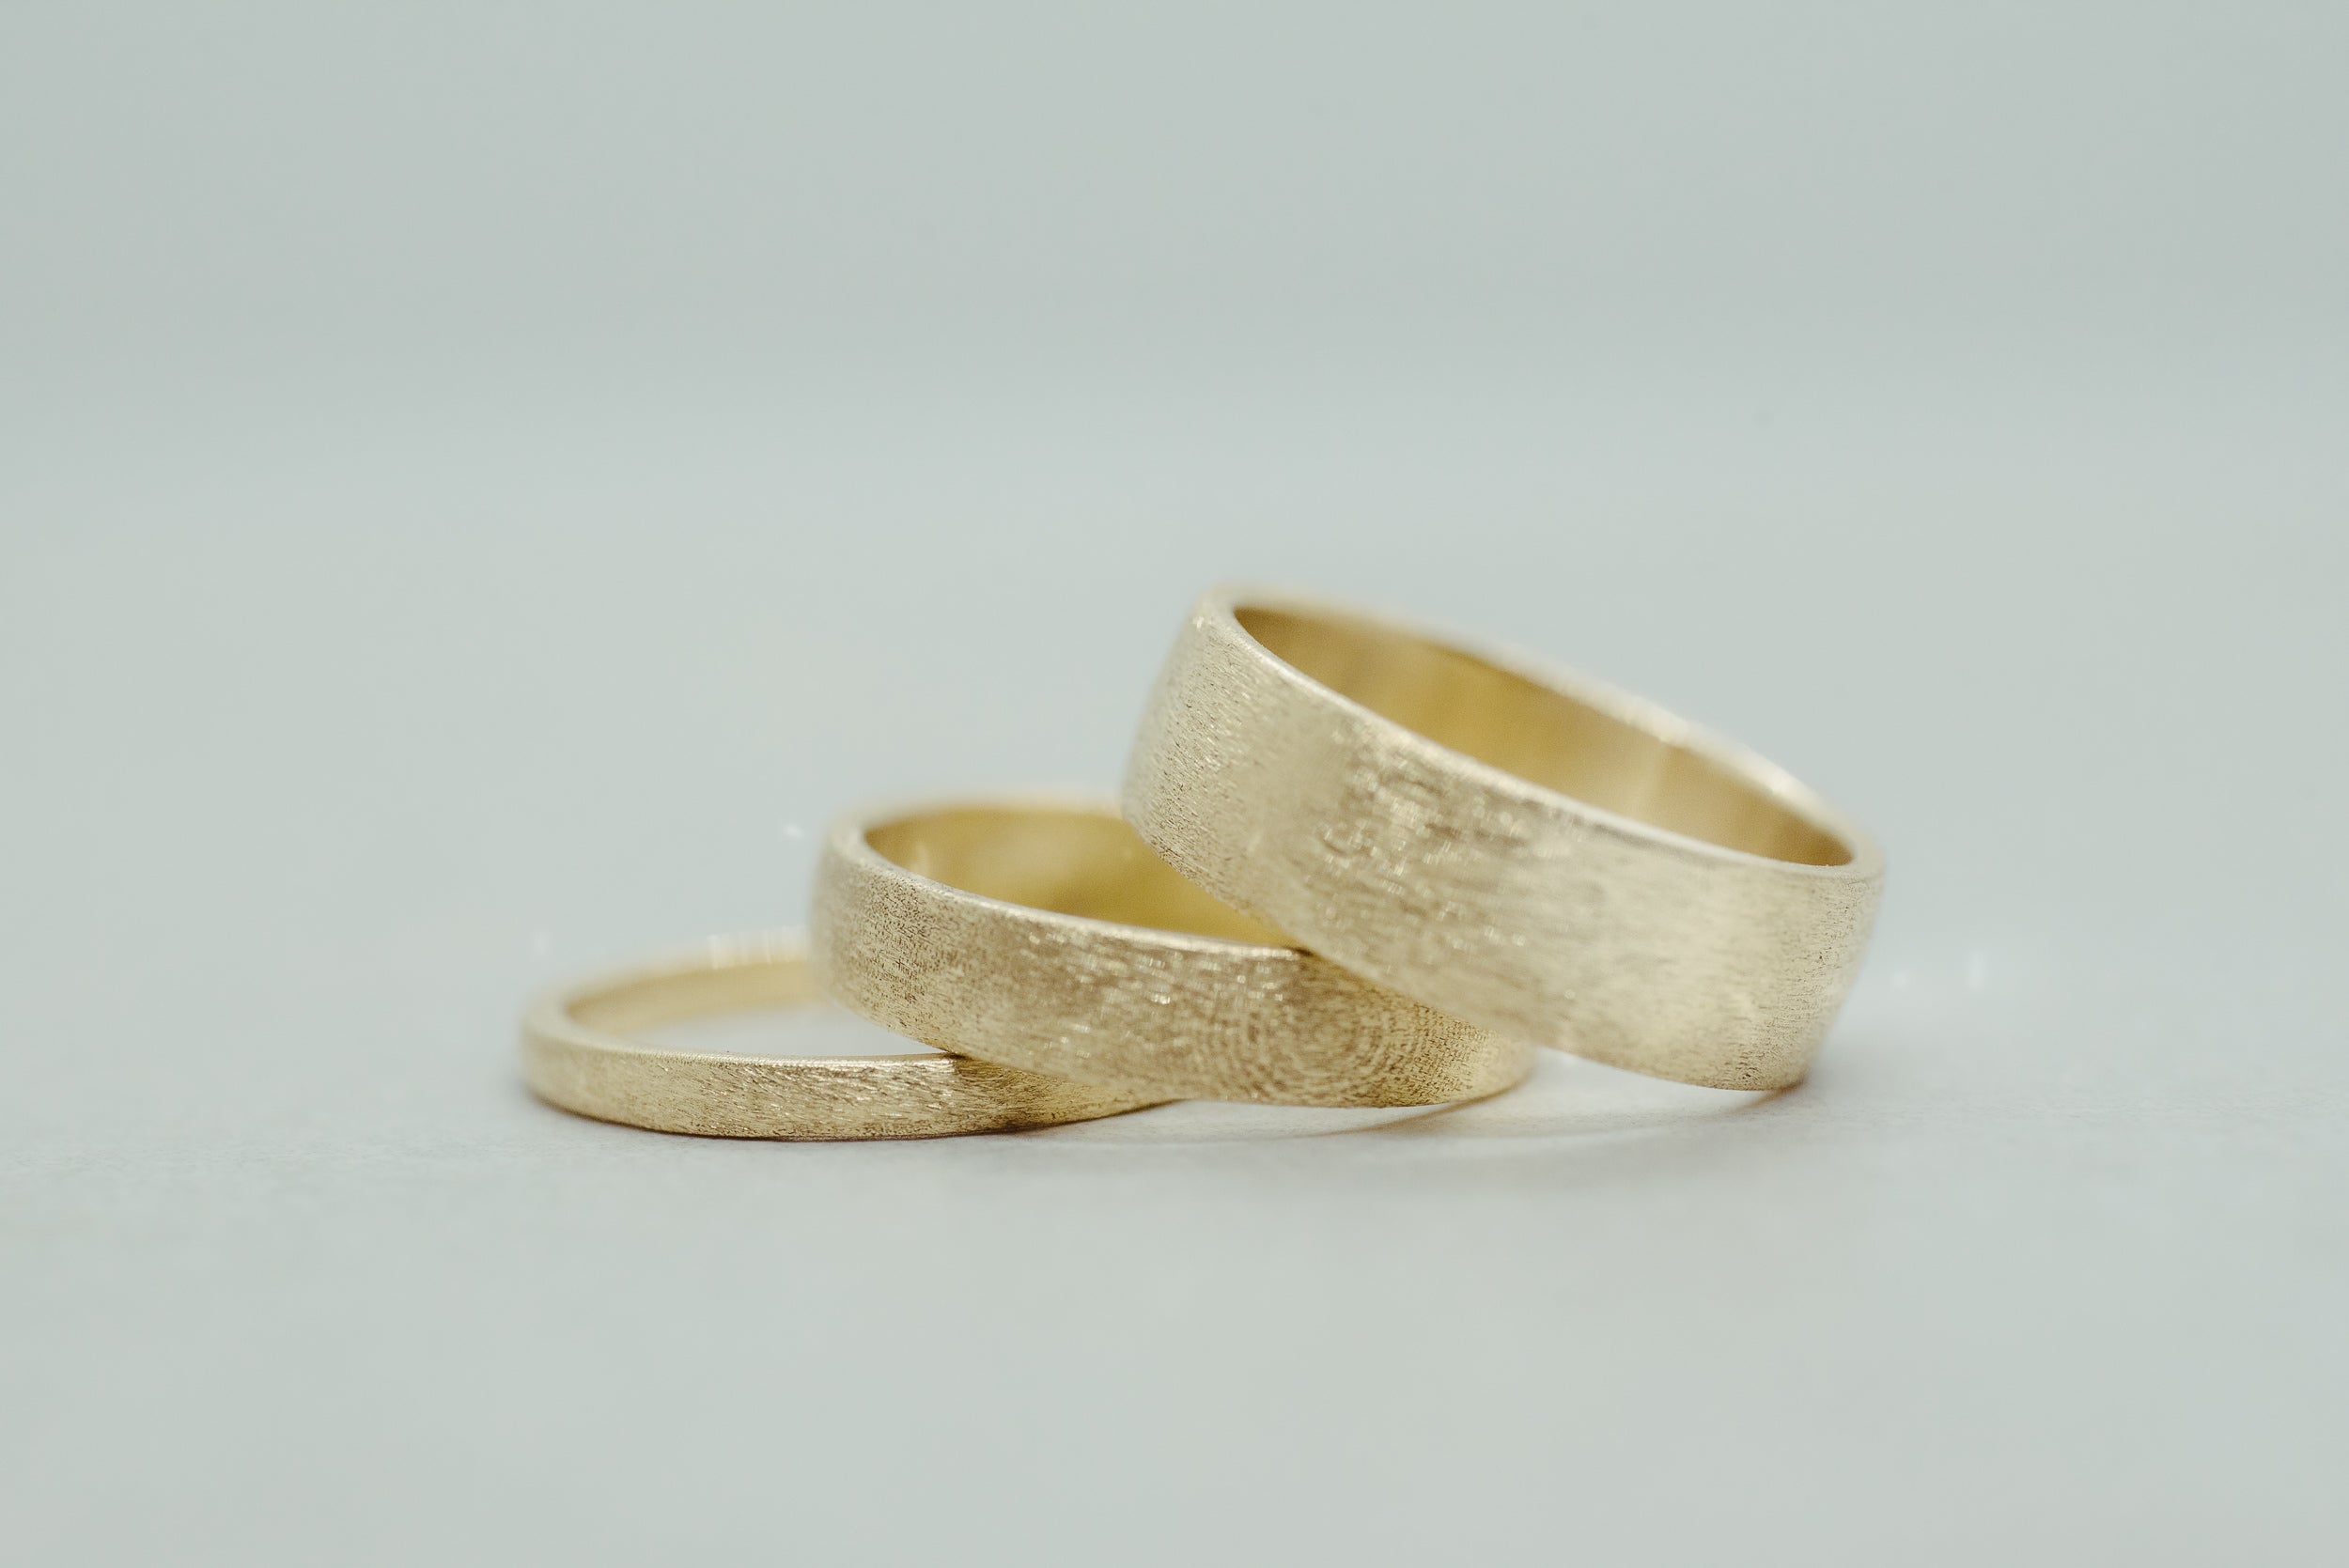 Brushed Wedding Band 4mm - Lelya - bespoke engagement and wedding rings made in Scotland, UK